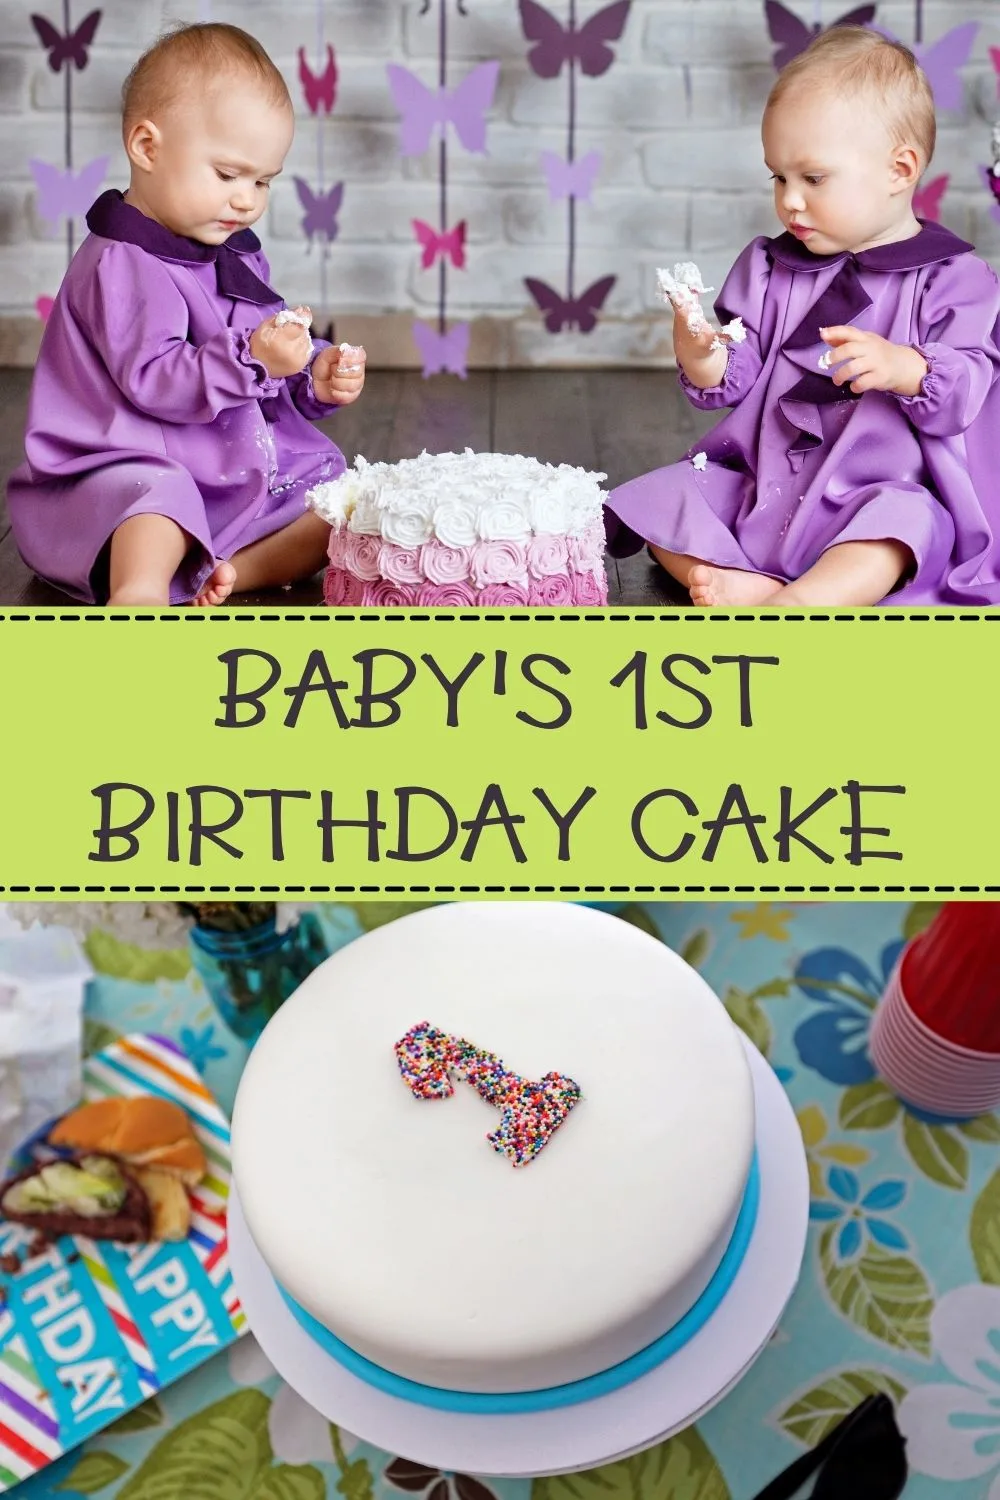 Baby's 1st birthday cake